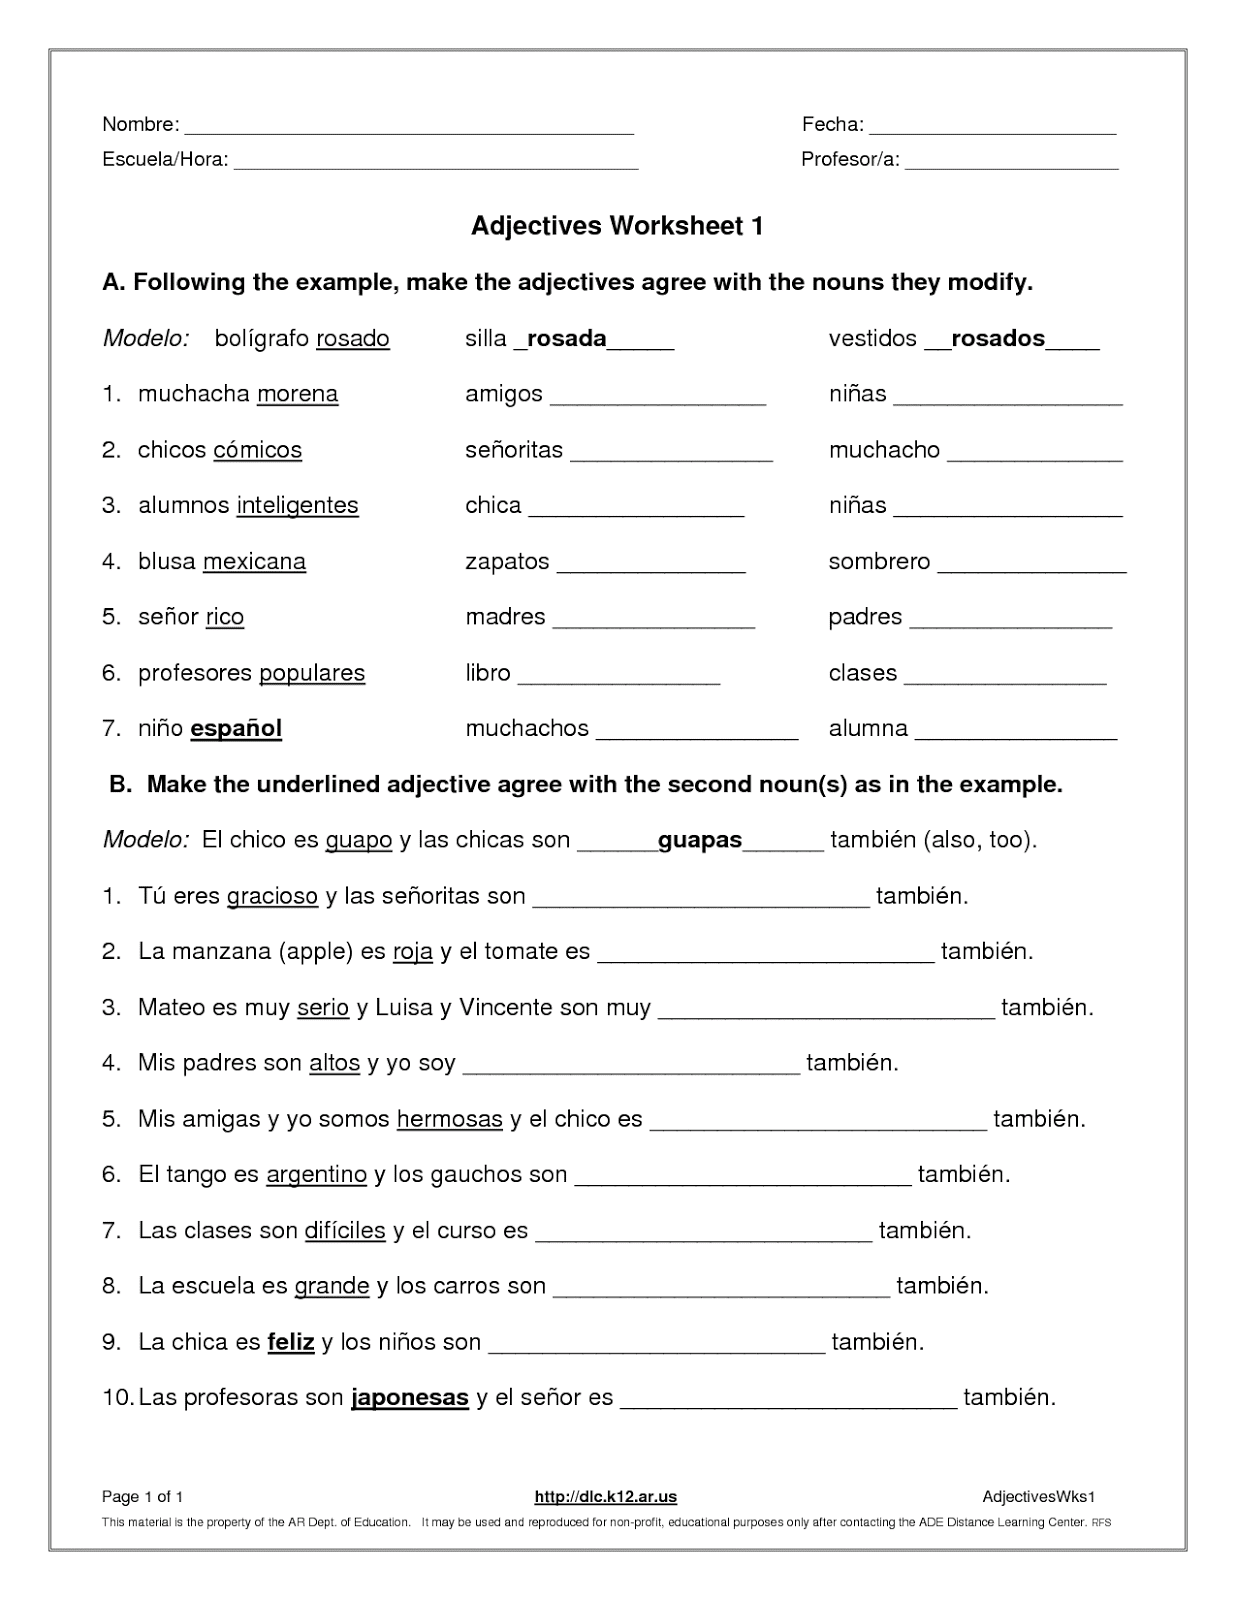 adjectives-worksheets-pdf-grade-6-top